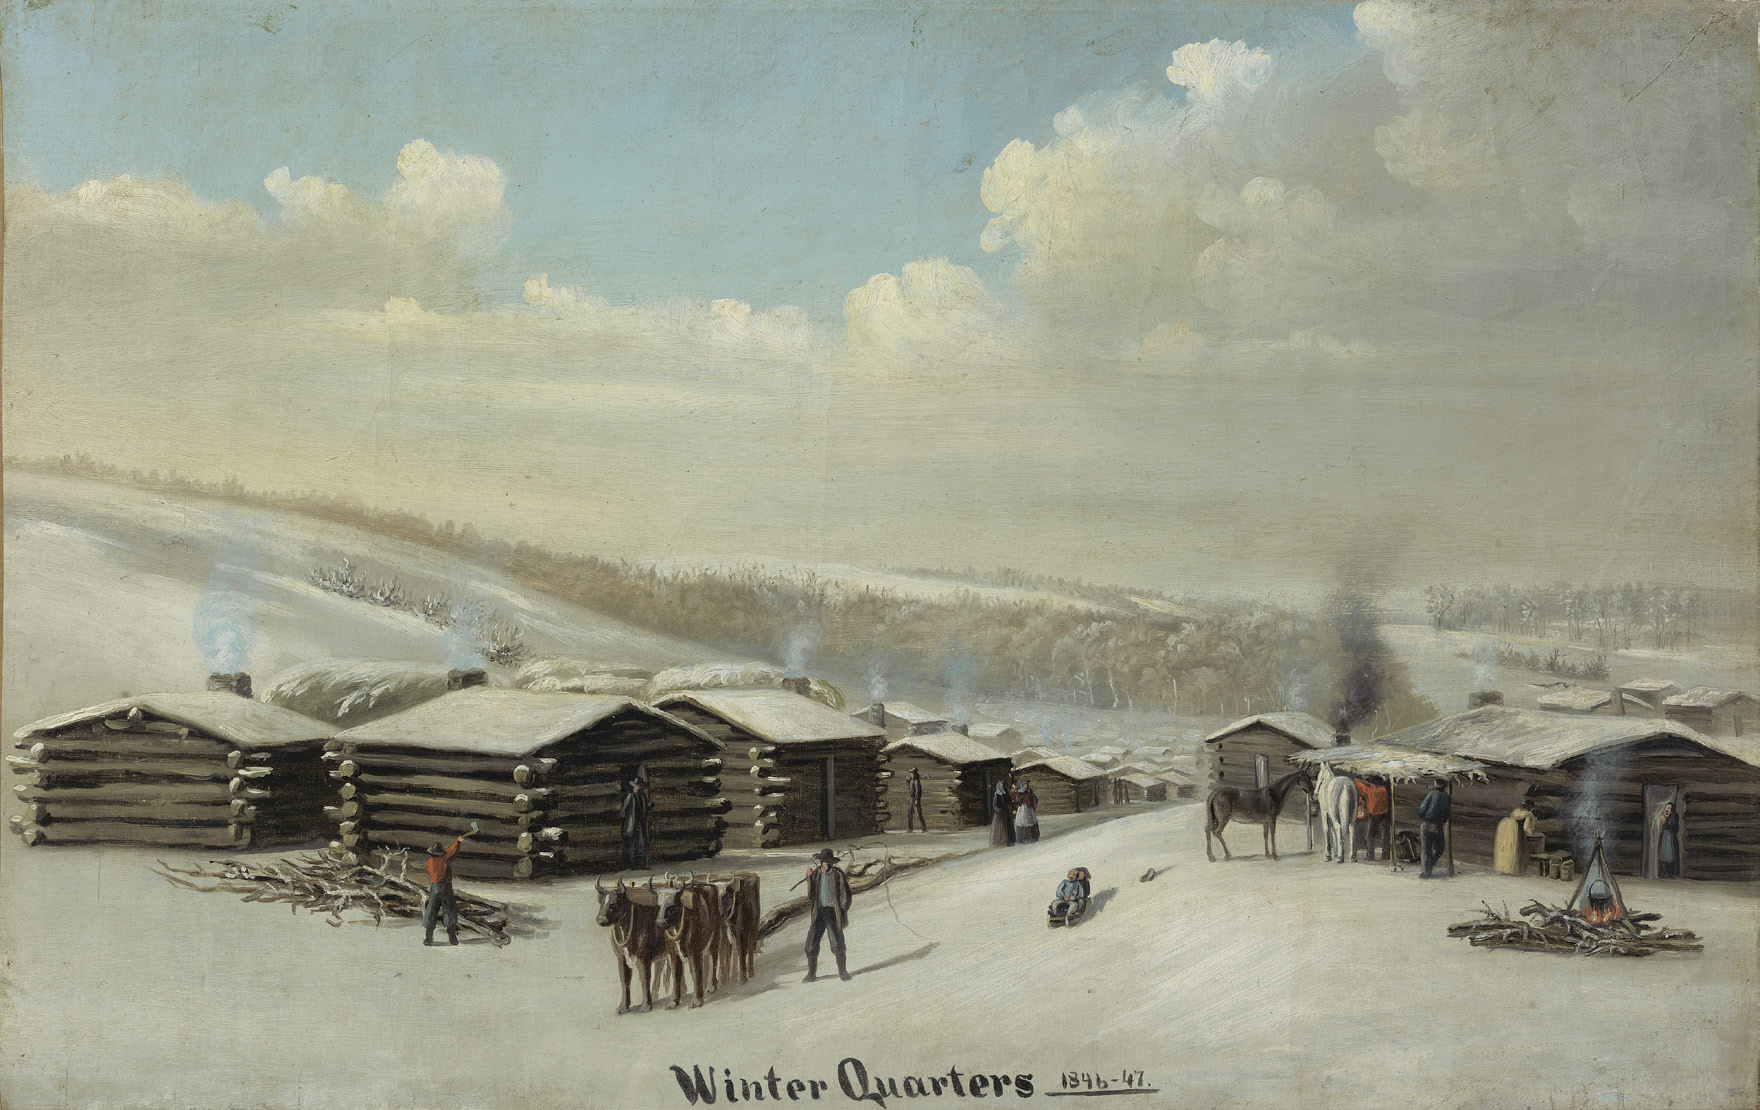 a village in winter